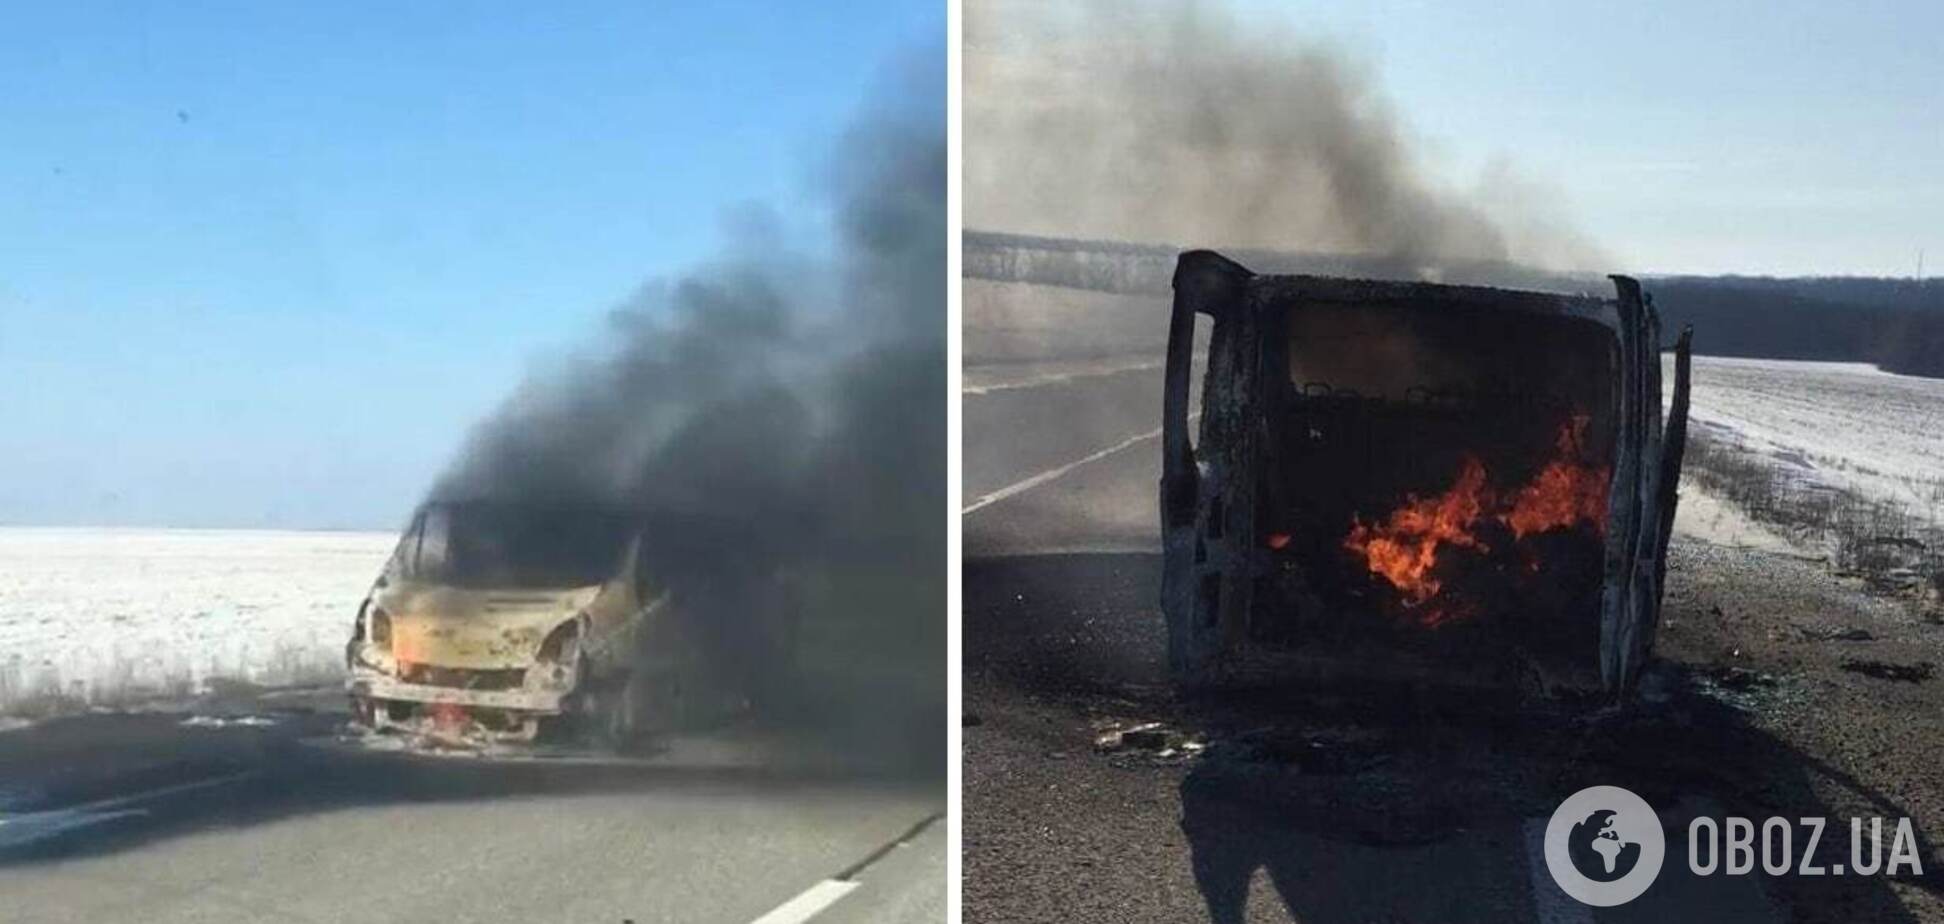 Российские оккупанты в Изюме на Харьковщине обстреляли микроавтобус, он загорелся. Фото